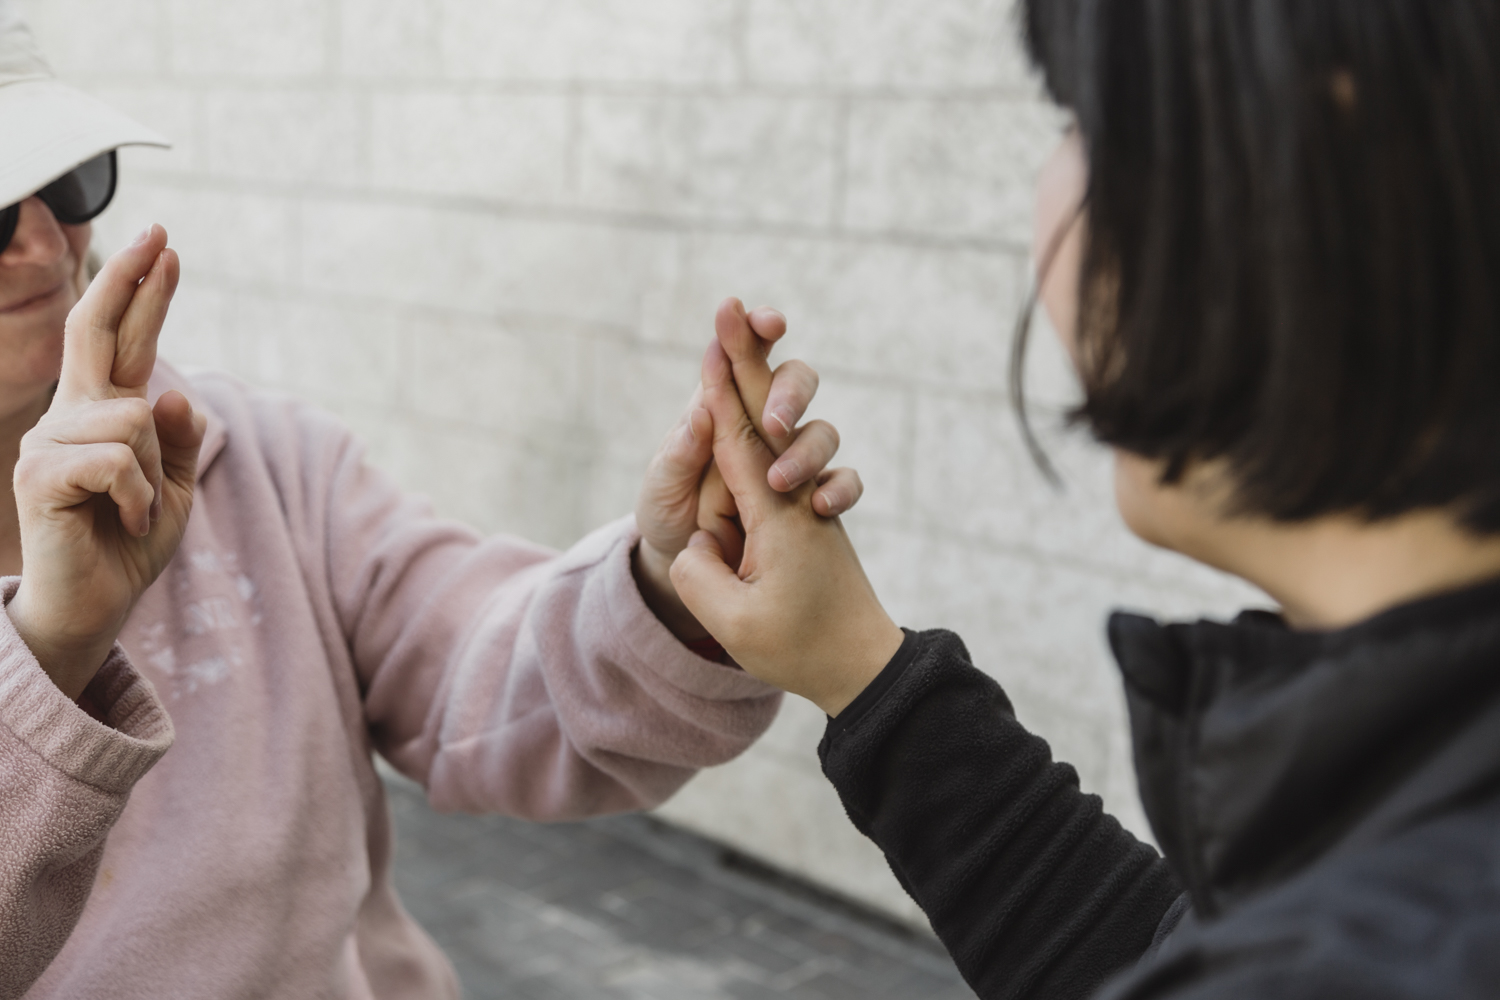 Une intervenante montre comment fonctionne l'ASL tactile avec une cliente. La signeuse communique en ASL, et la personne qui reçoit utilise ses mains pour sentir les signes au fur et à mesure qu'ils sont faits